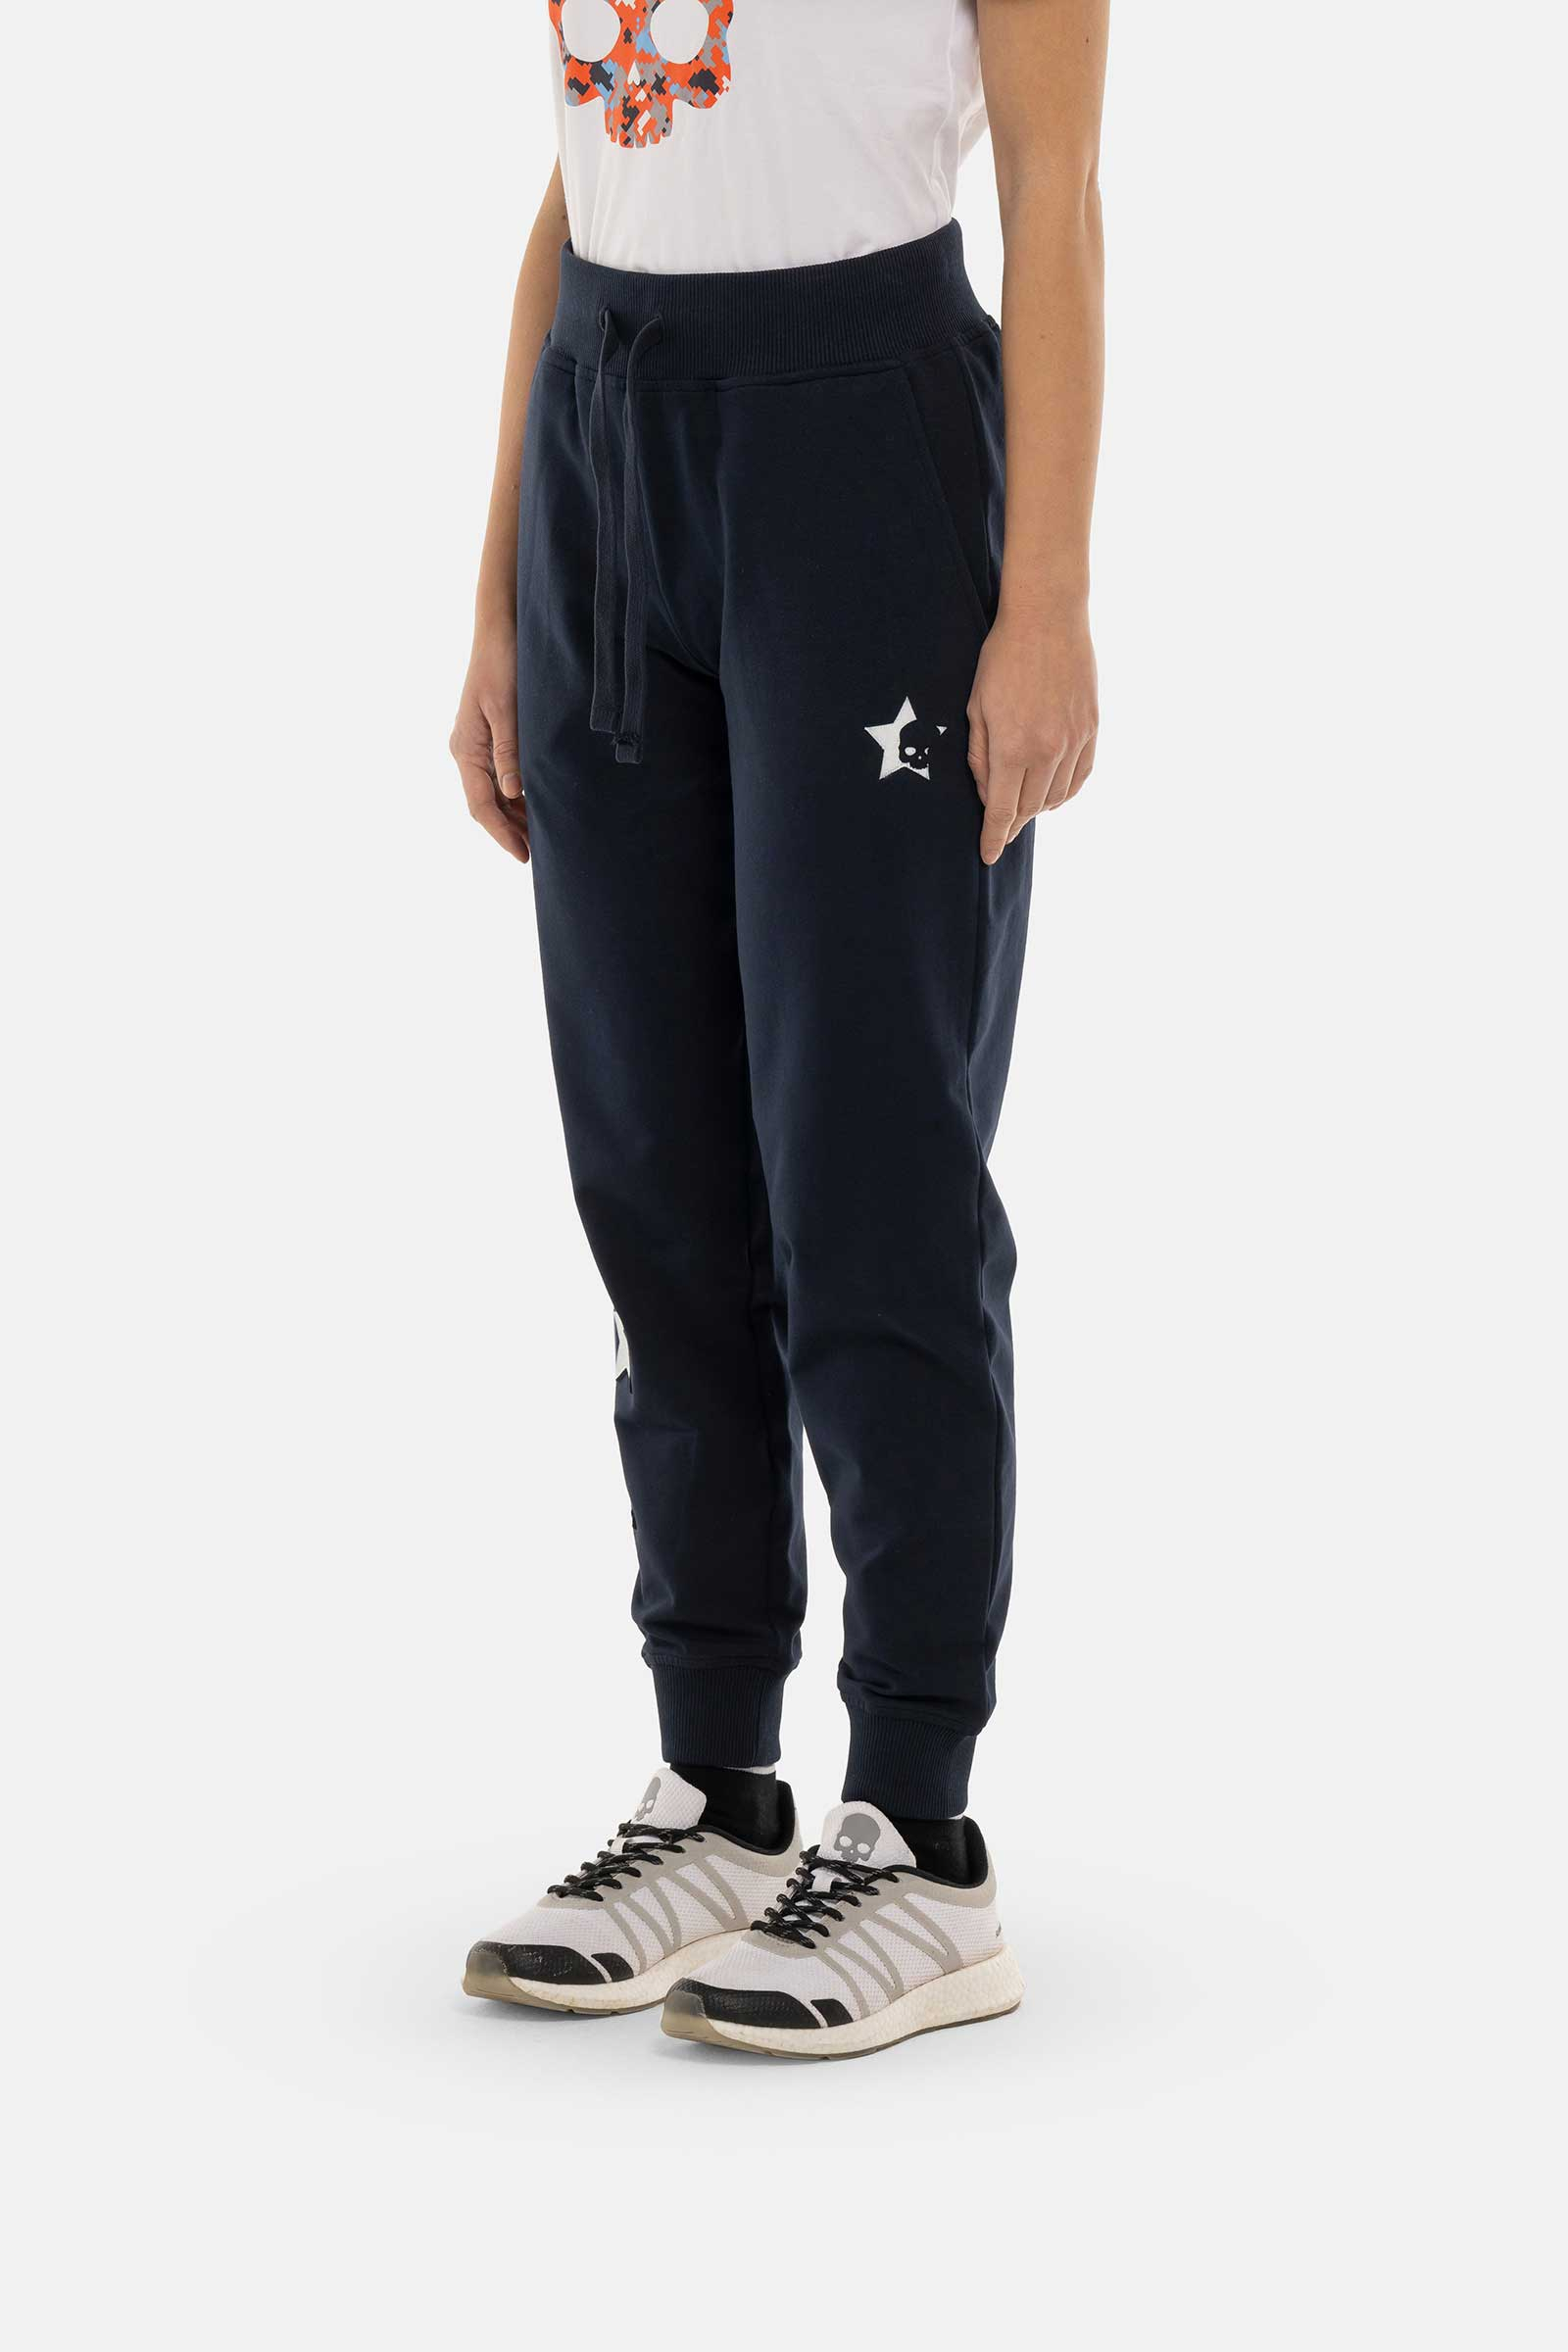 STARS PANTS - BLUE - Hydrogen - Luxury Sportwear